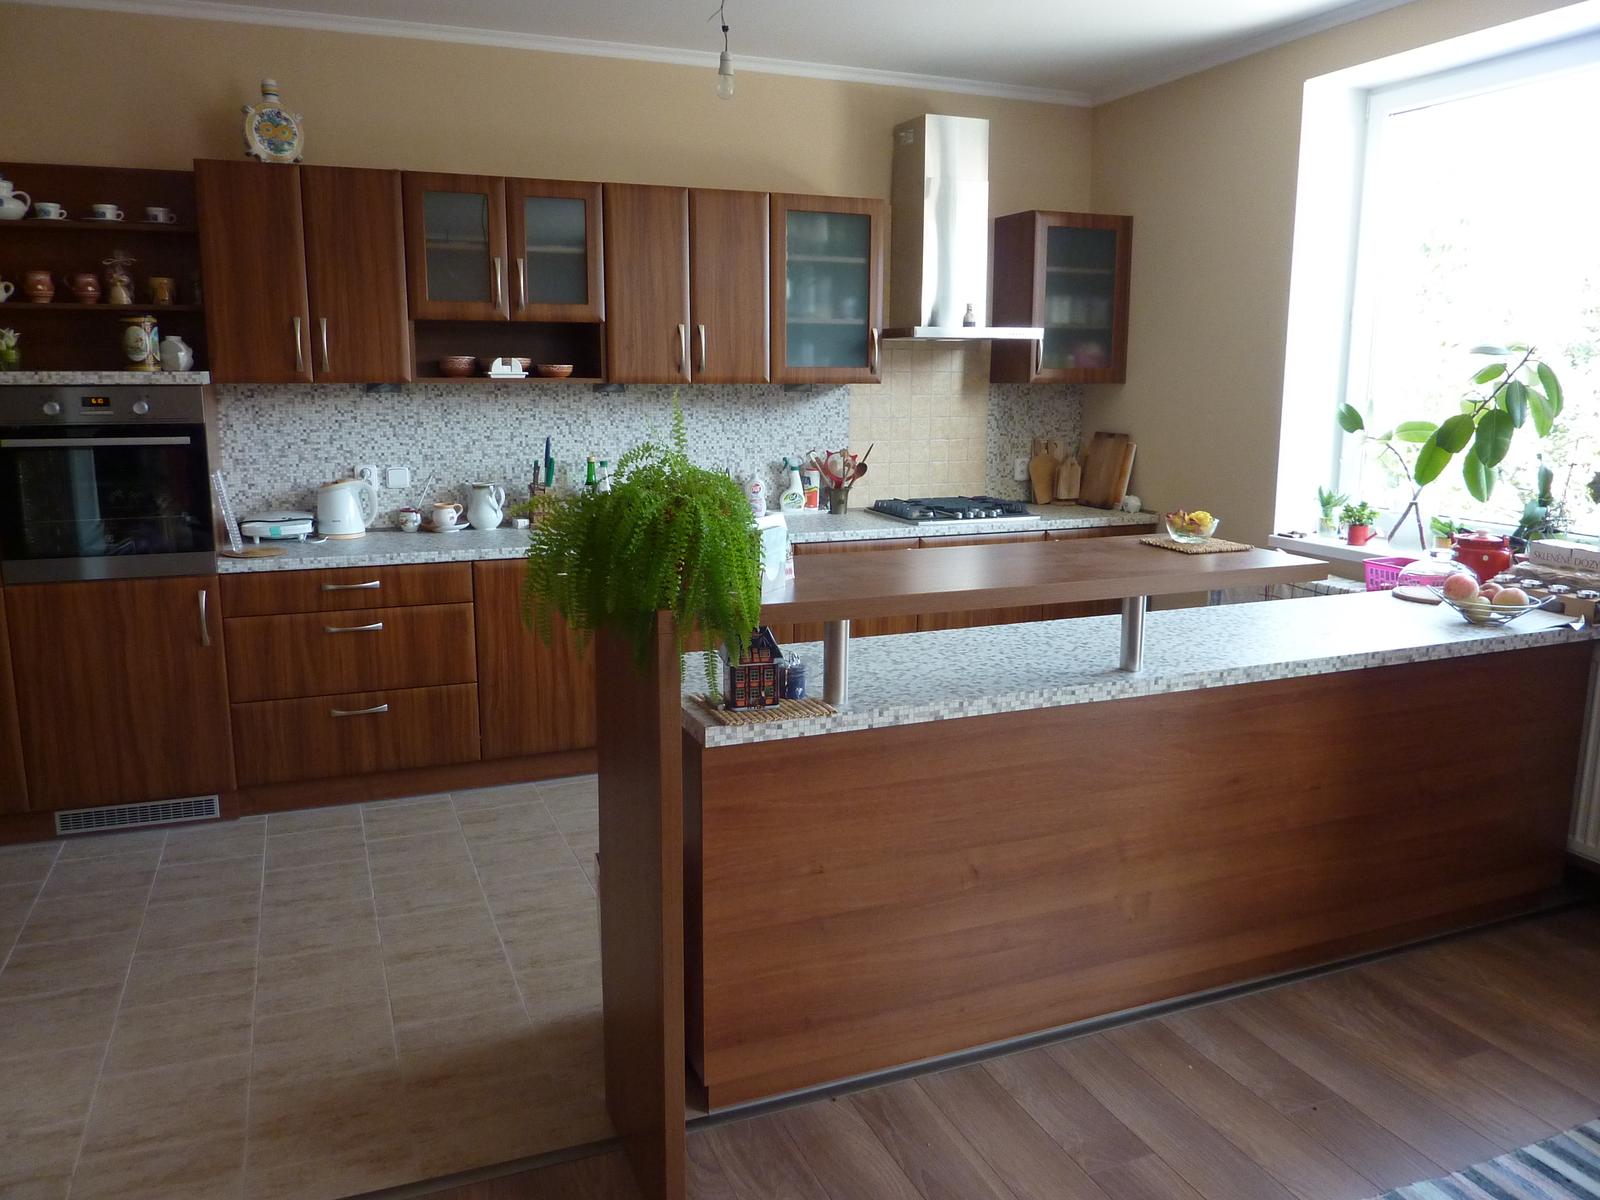 Realizácie kuchyne  - stolárstvo Valuška - kuchynská linka robená do rodinného domu